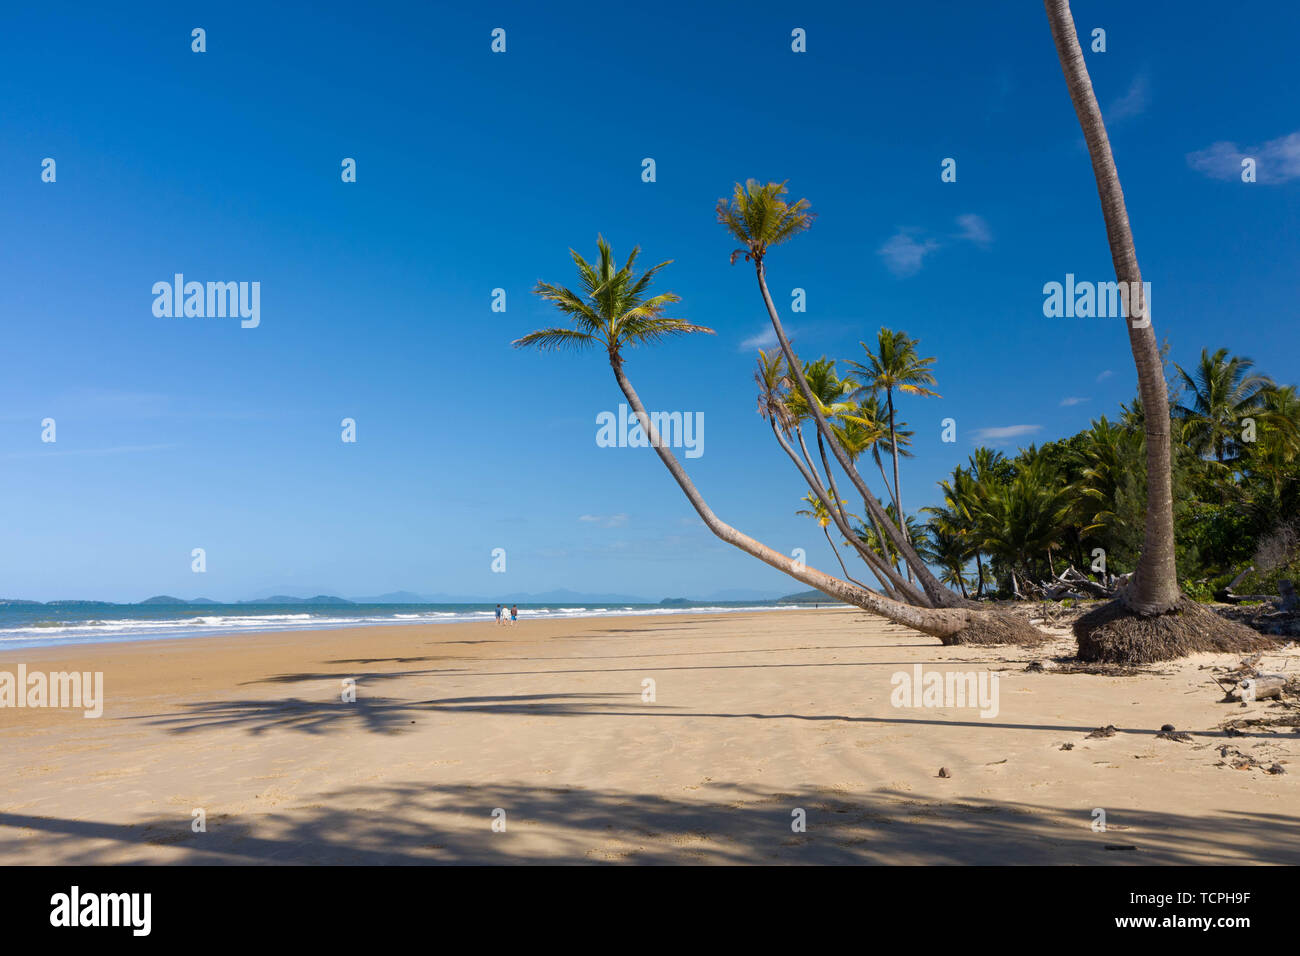 Haut de l'antenne vue sur la plage de sable blanc, de magnifiques palmiers et l'eau chaude turquoise, dans un paradis tropical tropical island, tropiques Banque D'Images